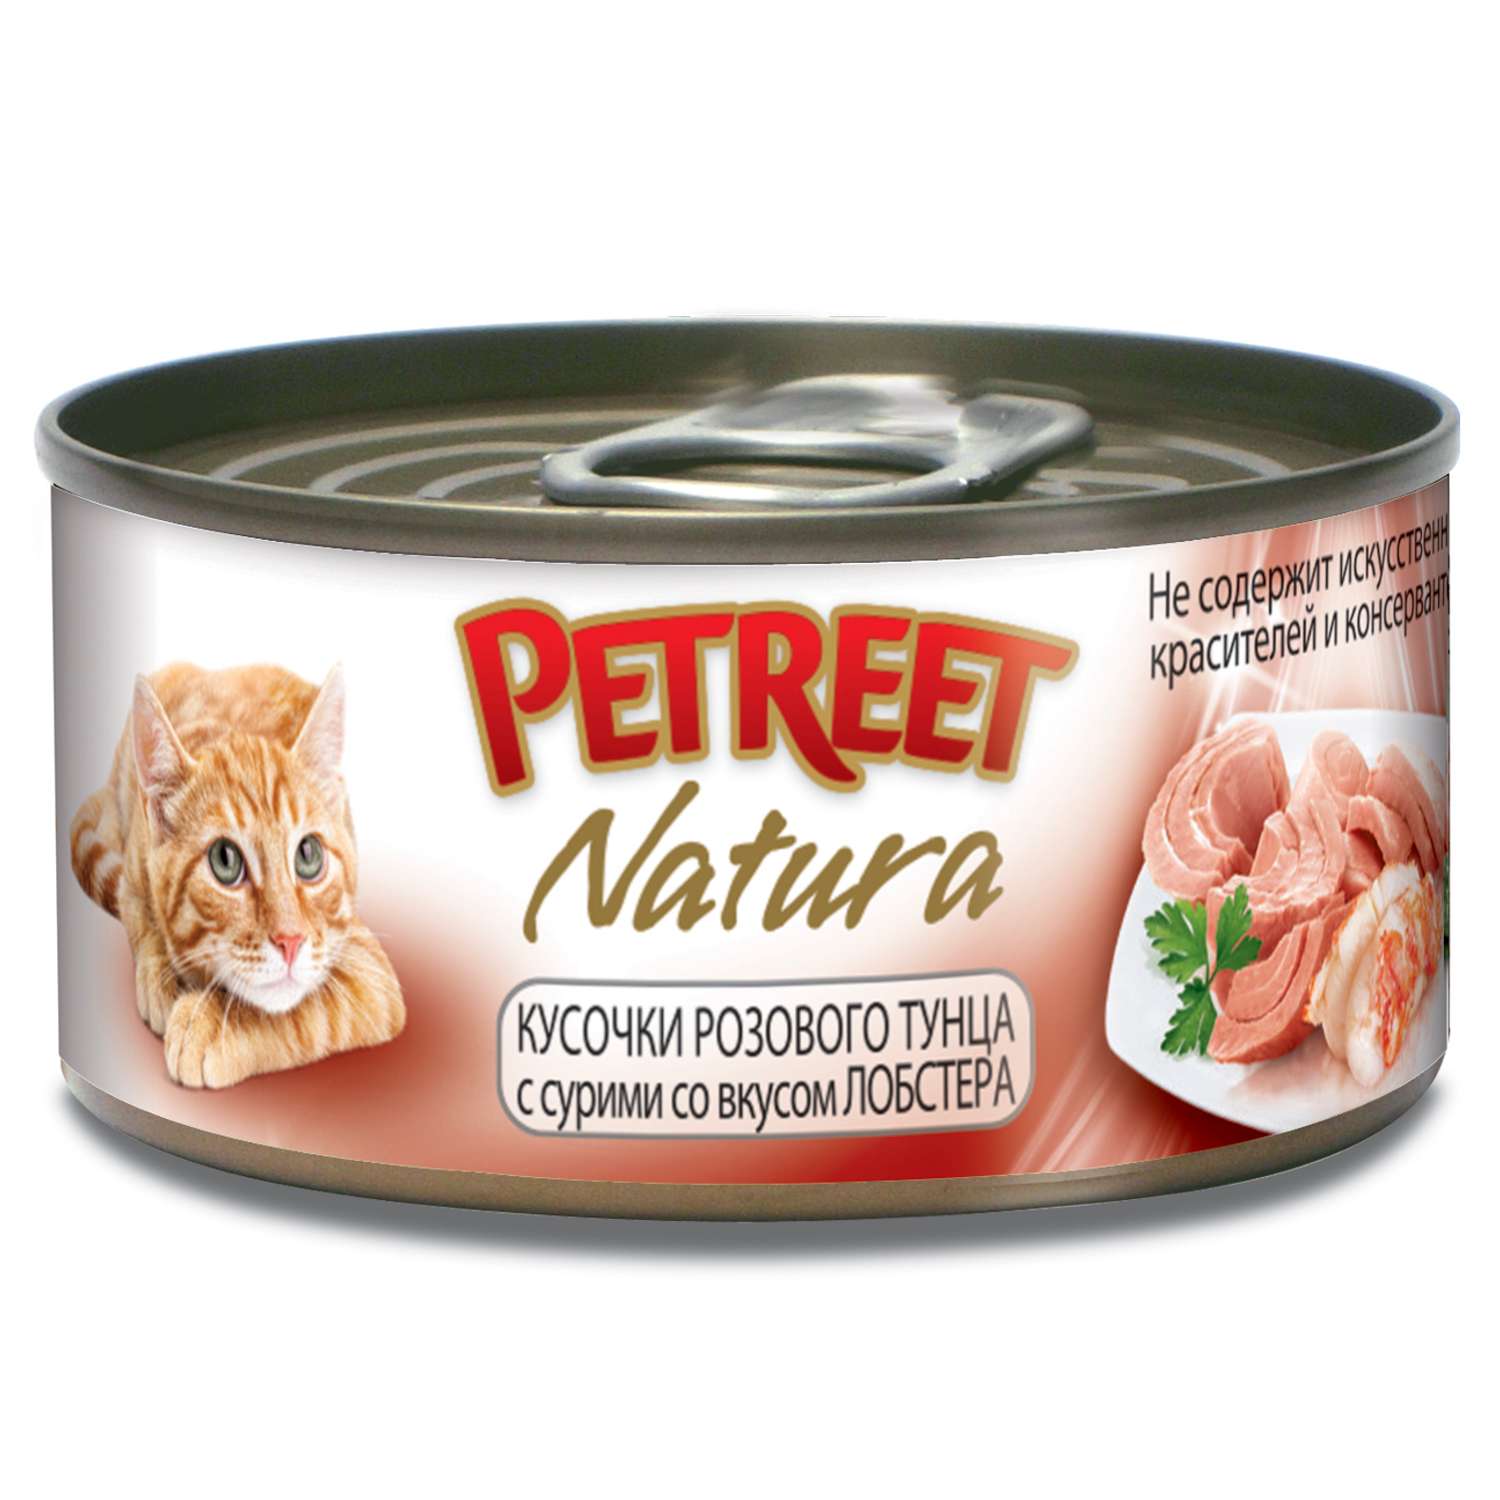 Корм влажный для кошек Petreet 70г кусочки розового тунца с лобстером консервированный - фото 1